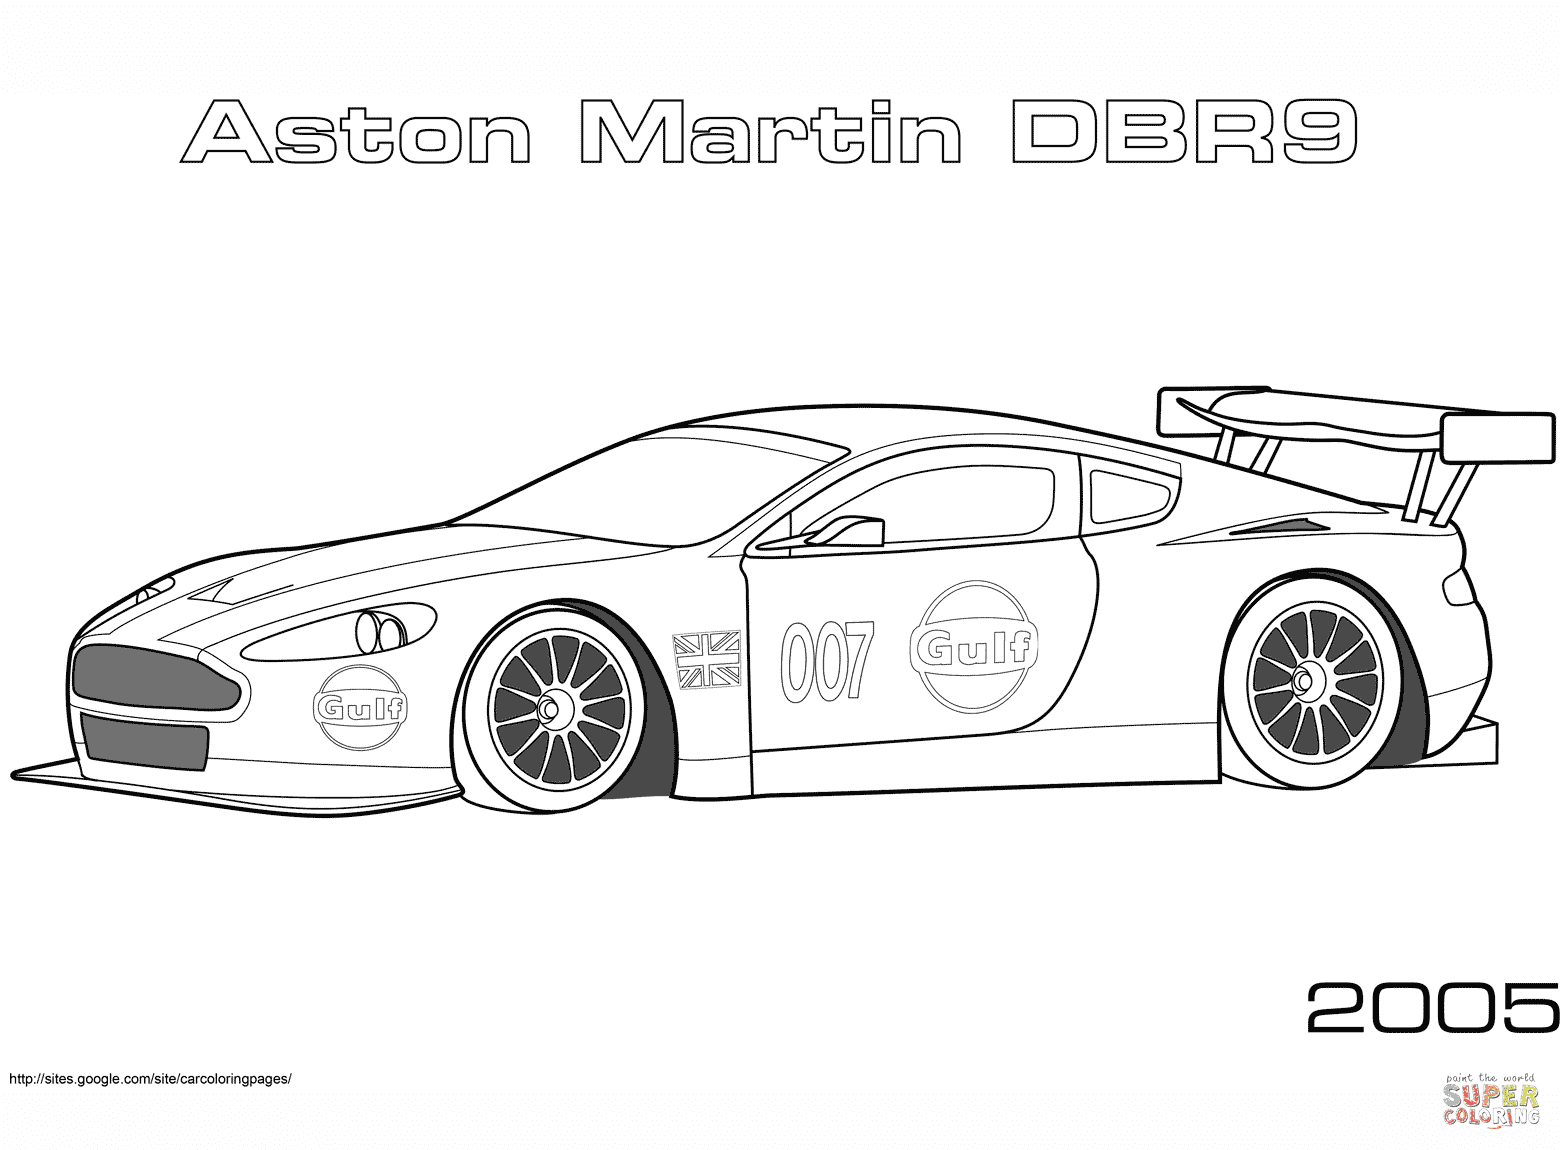 er sur la 2005 Aston Martin DBR9 coloriages